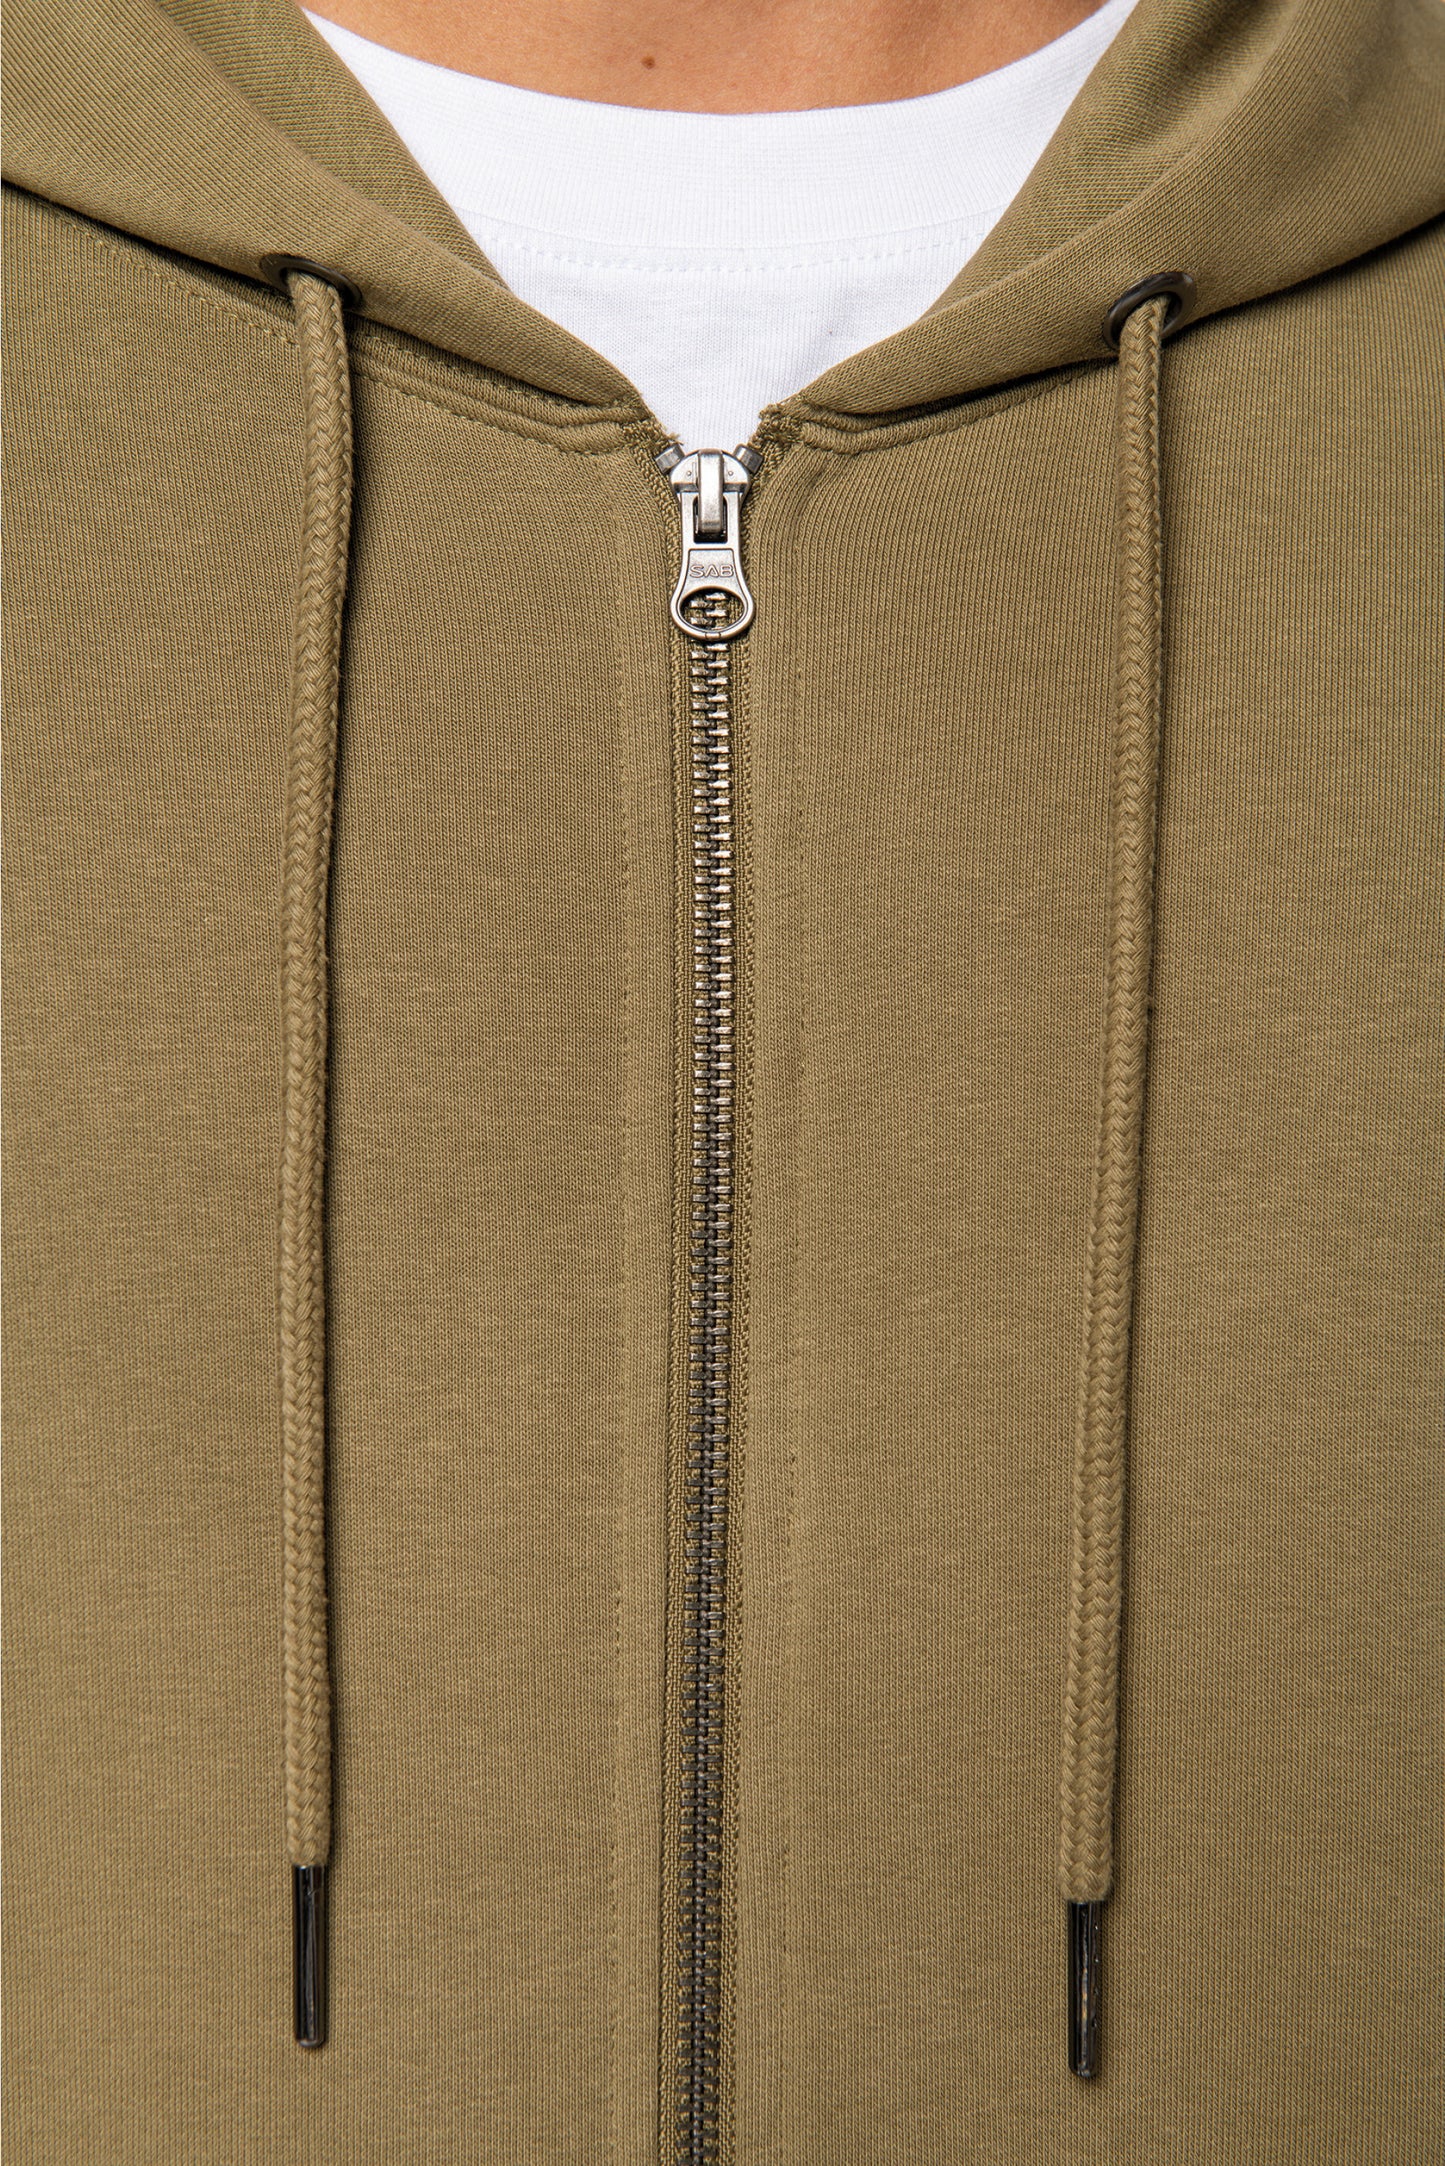 NS402 - Sweat-shirt écoresponsable zippé à capuche unisexe